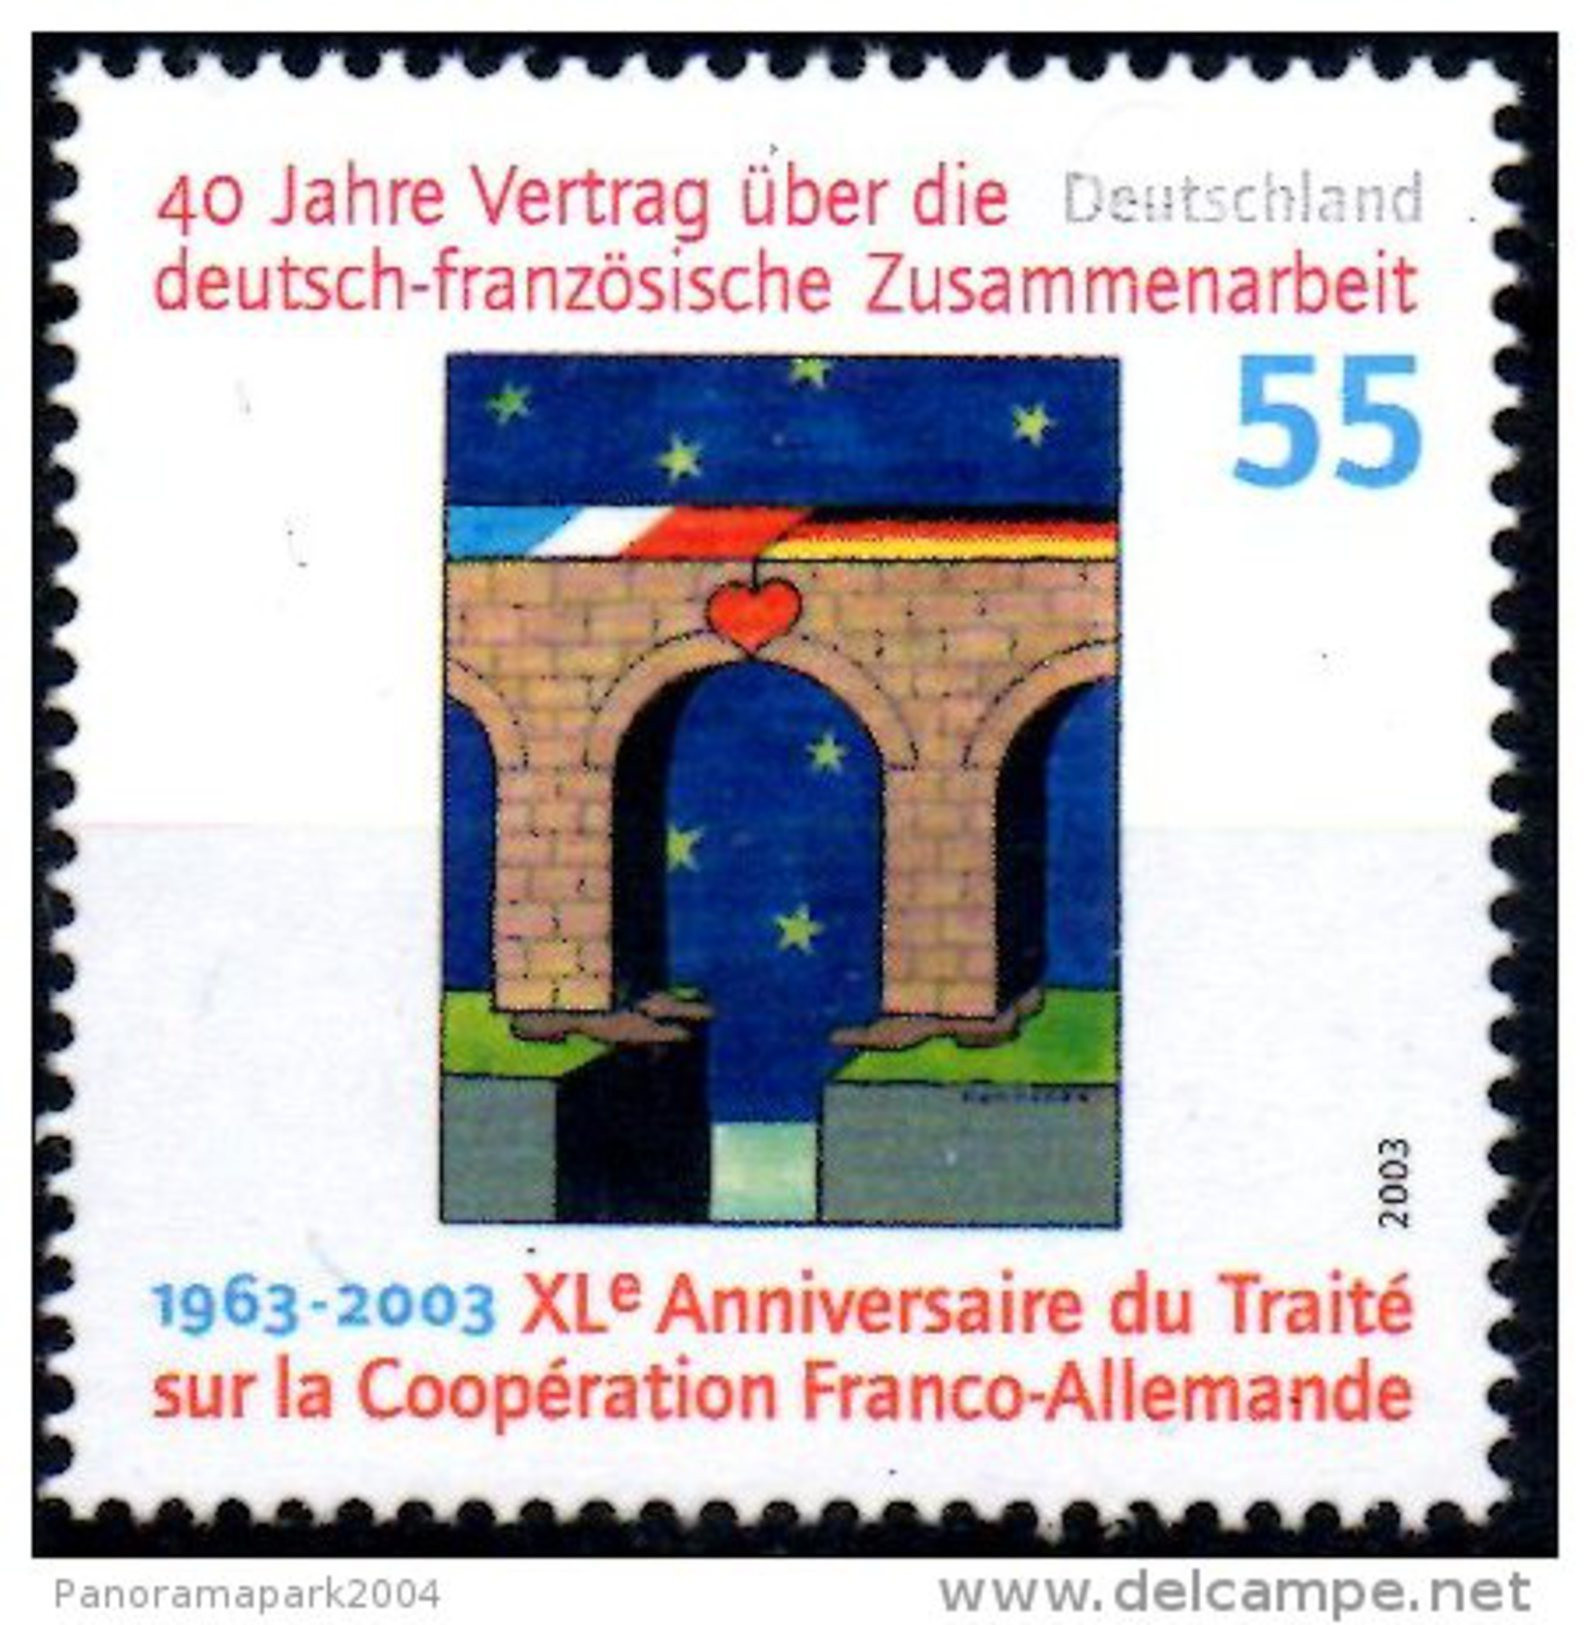 Emission Commune France Allemagne 2003 40e Anniversaire Traité De L'Elysée Coopération Tomi Ungerer Yvert N°2139 - Joint Issues